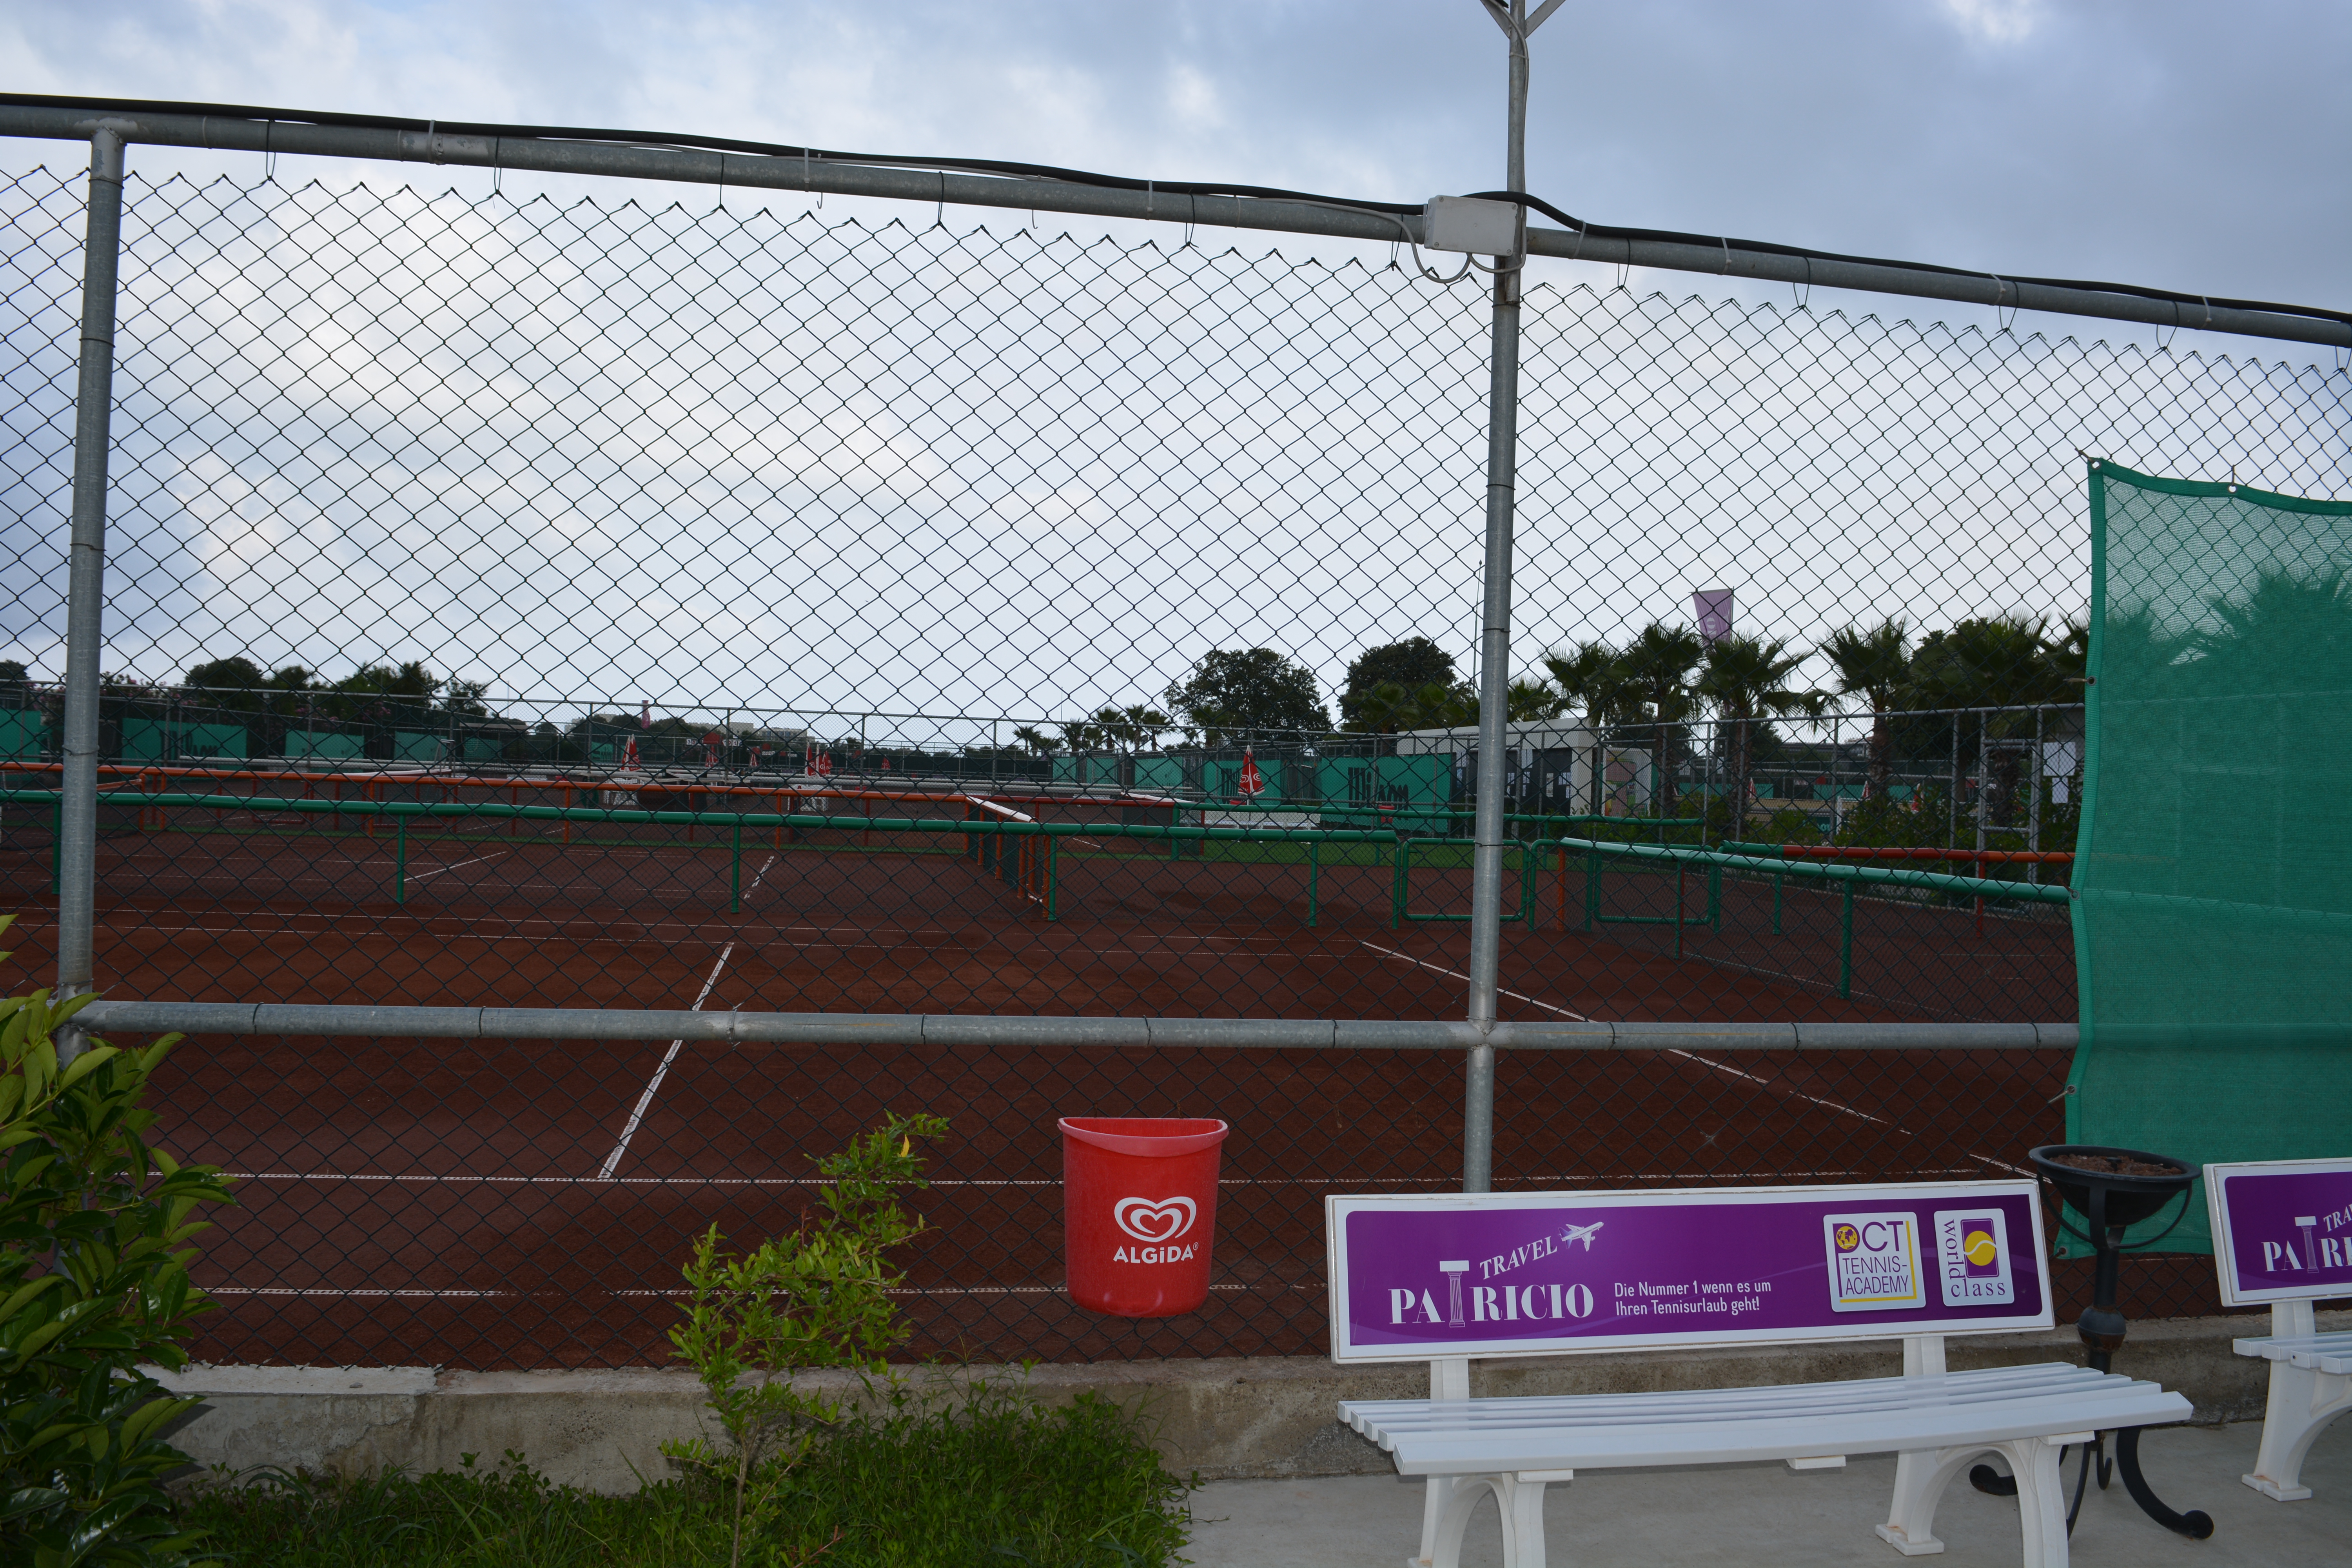 AliBey Resort Tennis Center Side Sorgun 48 courts viue 4